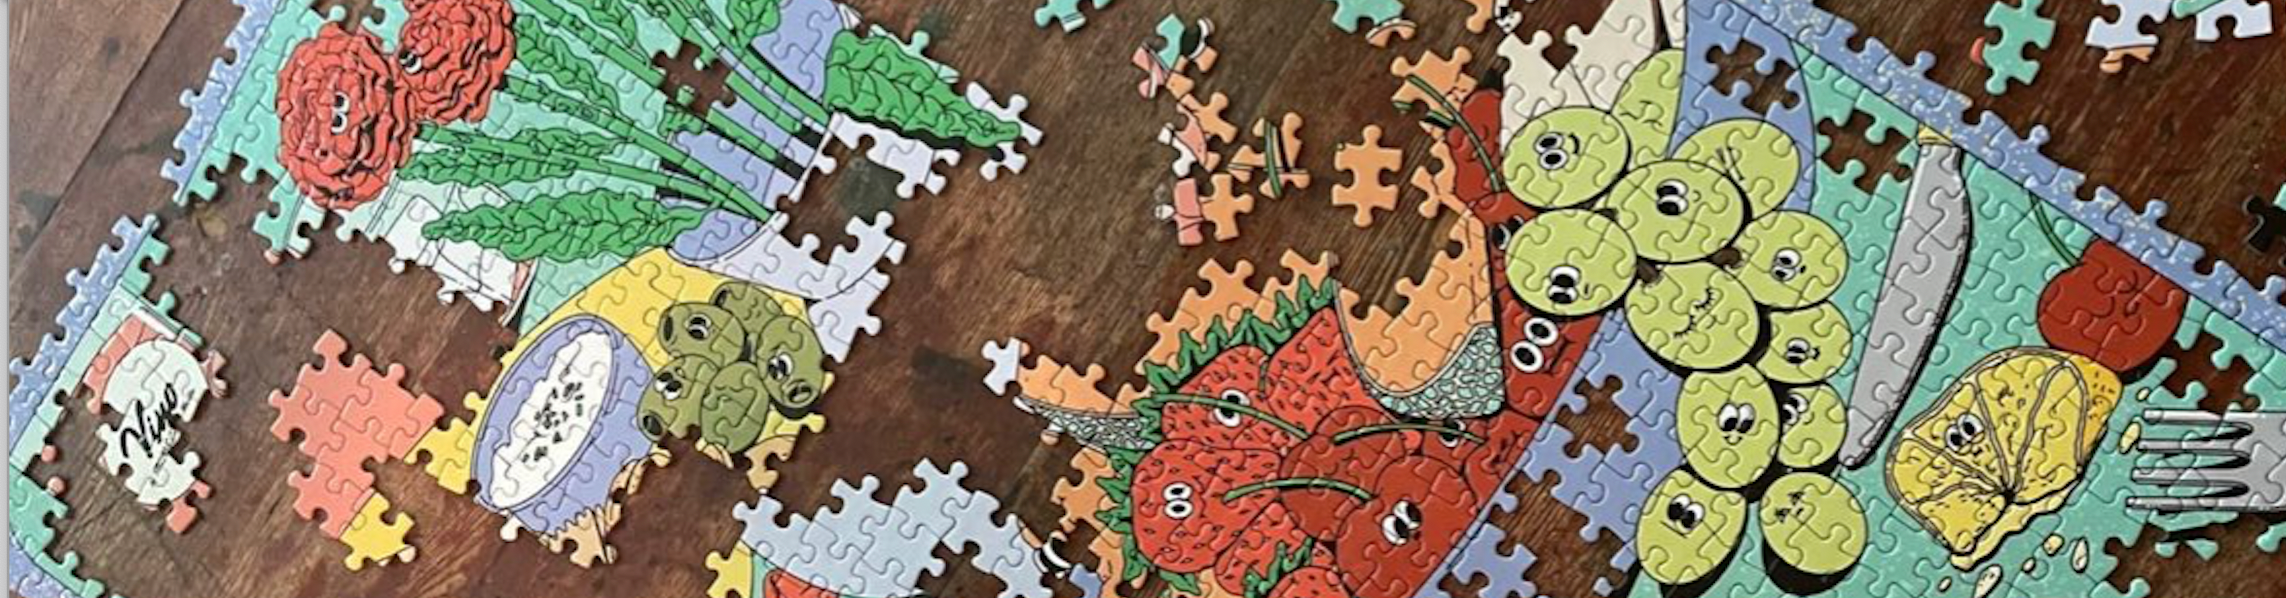 Cadres pour puzzle – encadrez votre puzzle ! 